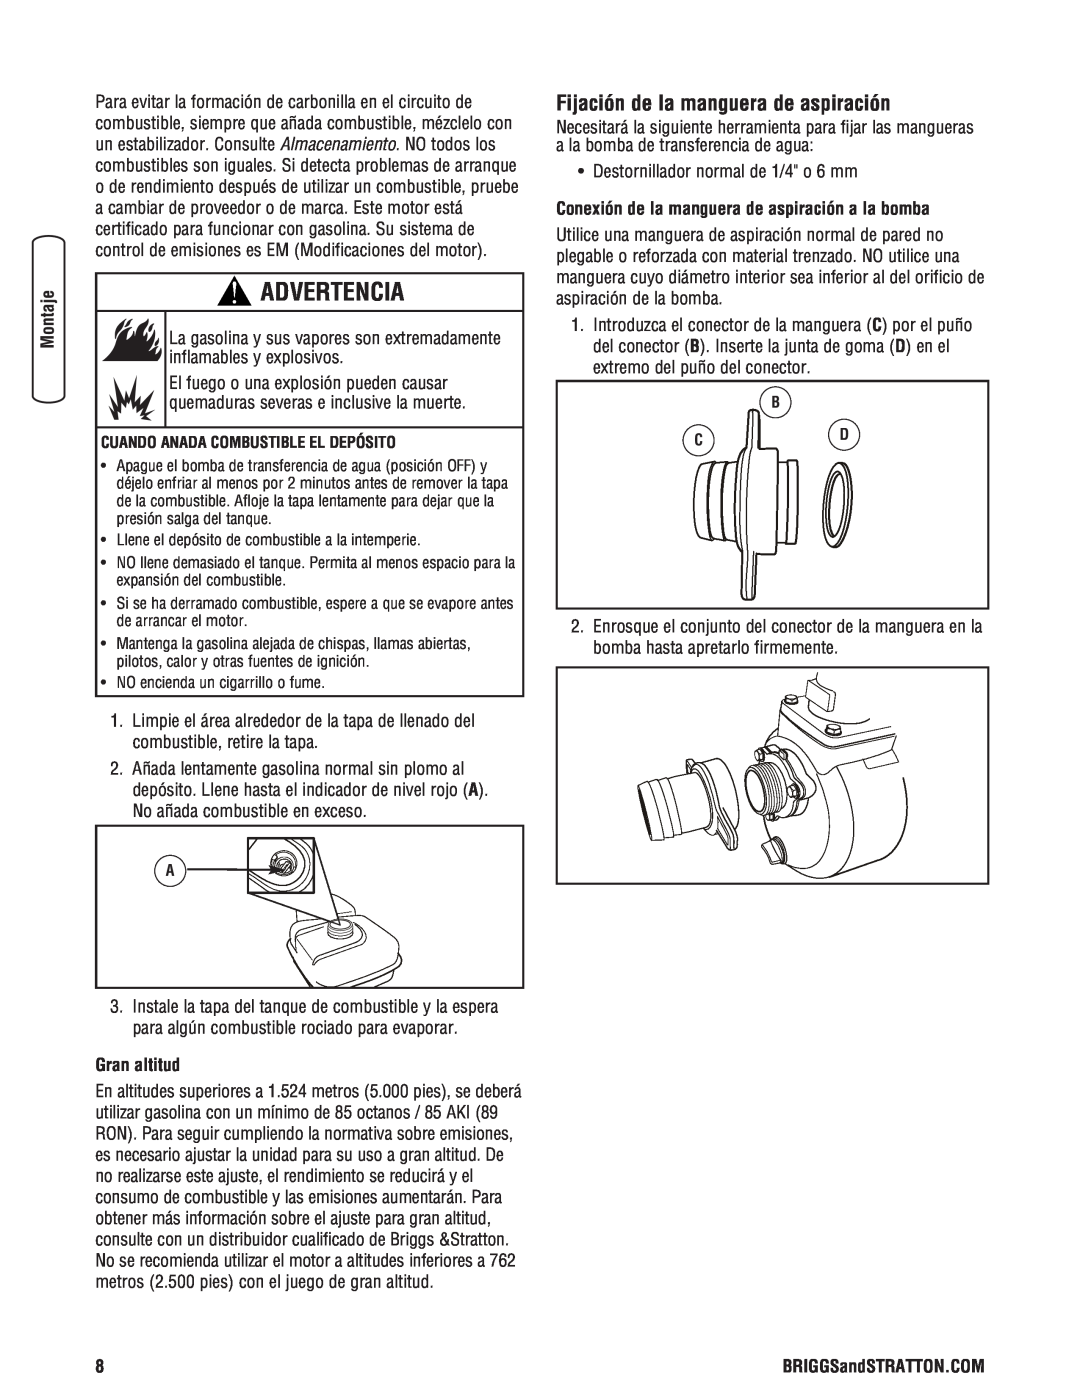 Briggs & Stratton Water Transfer Pump manual Fijación de la manguera de aspiración, Gran altitud, Advertencia 